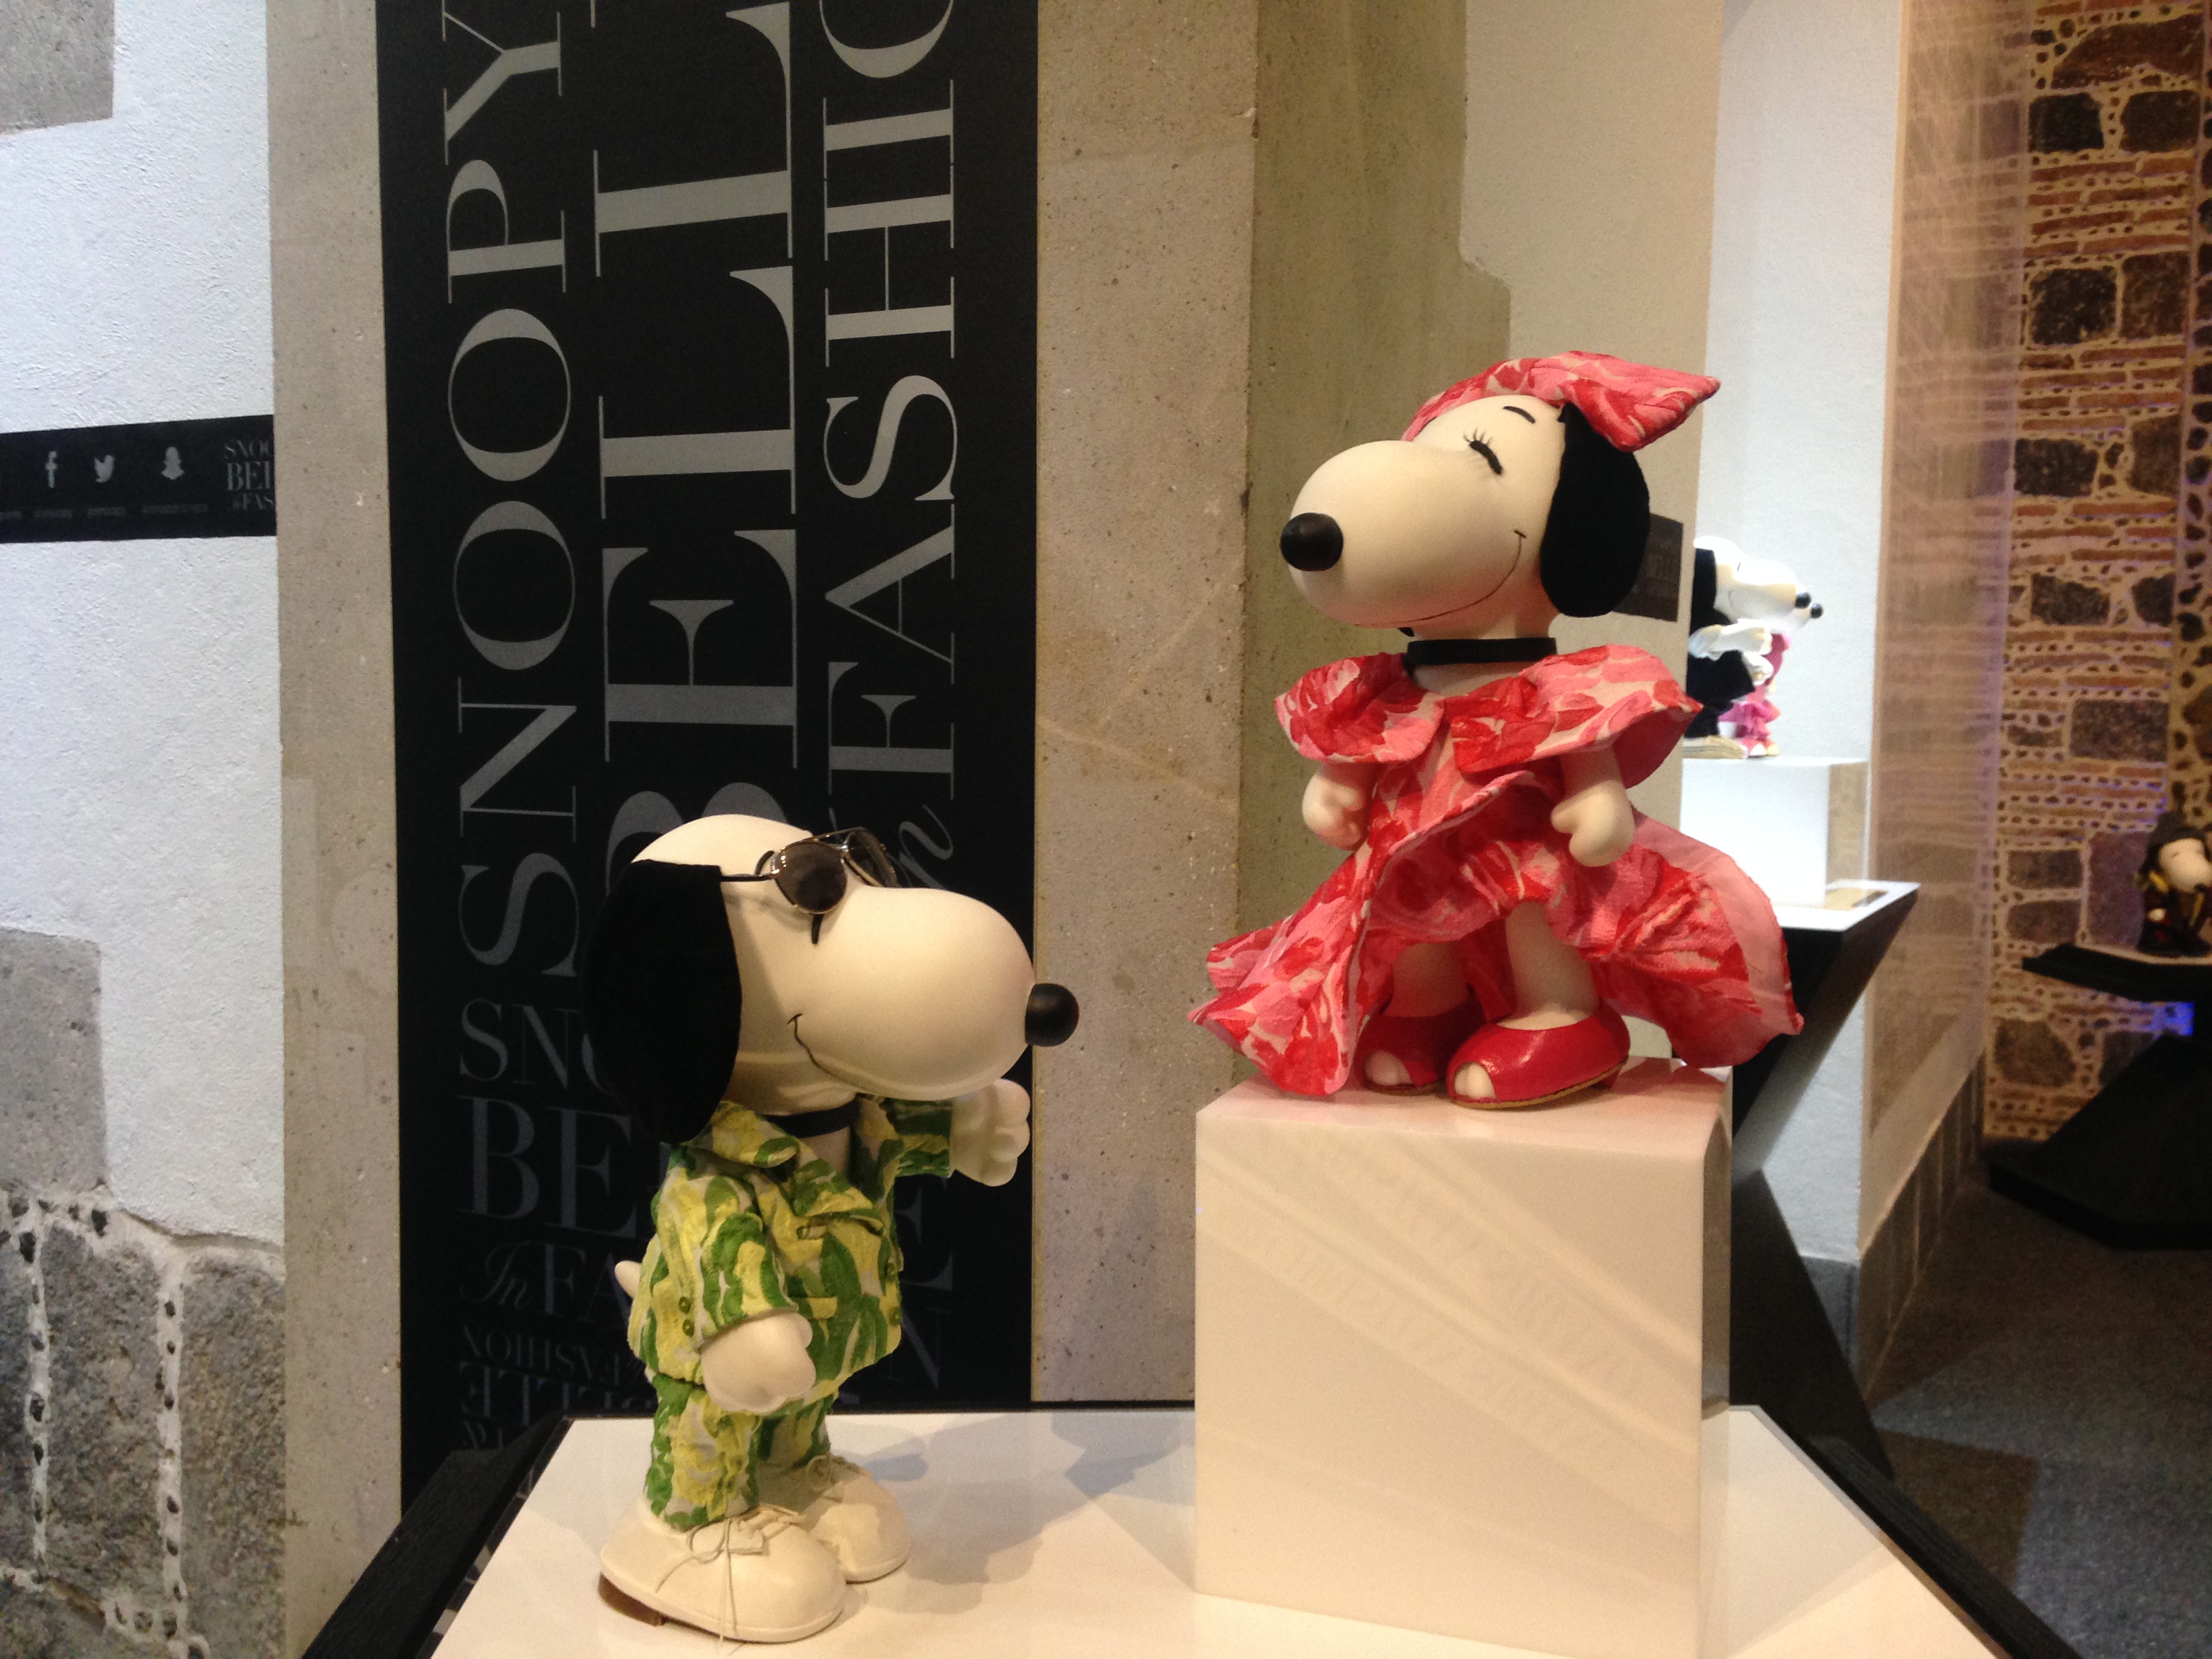 Snoopy and Belle in Fashion, una exhibición que no te puedes perder